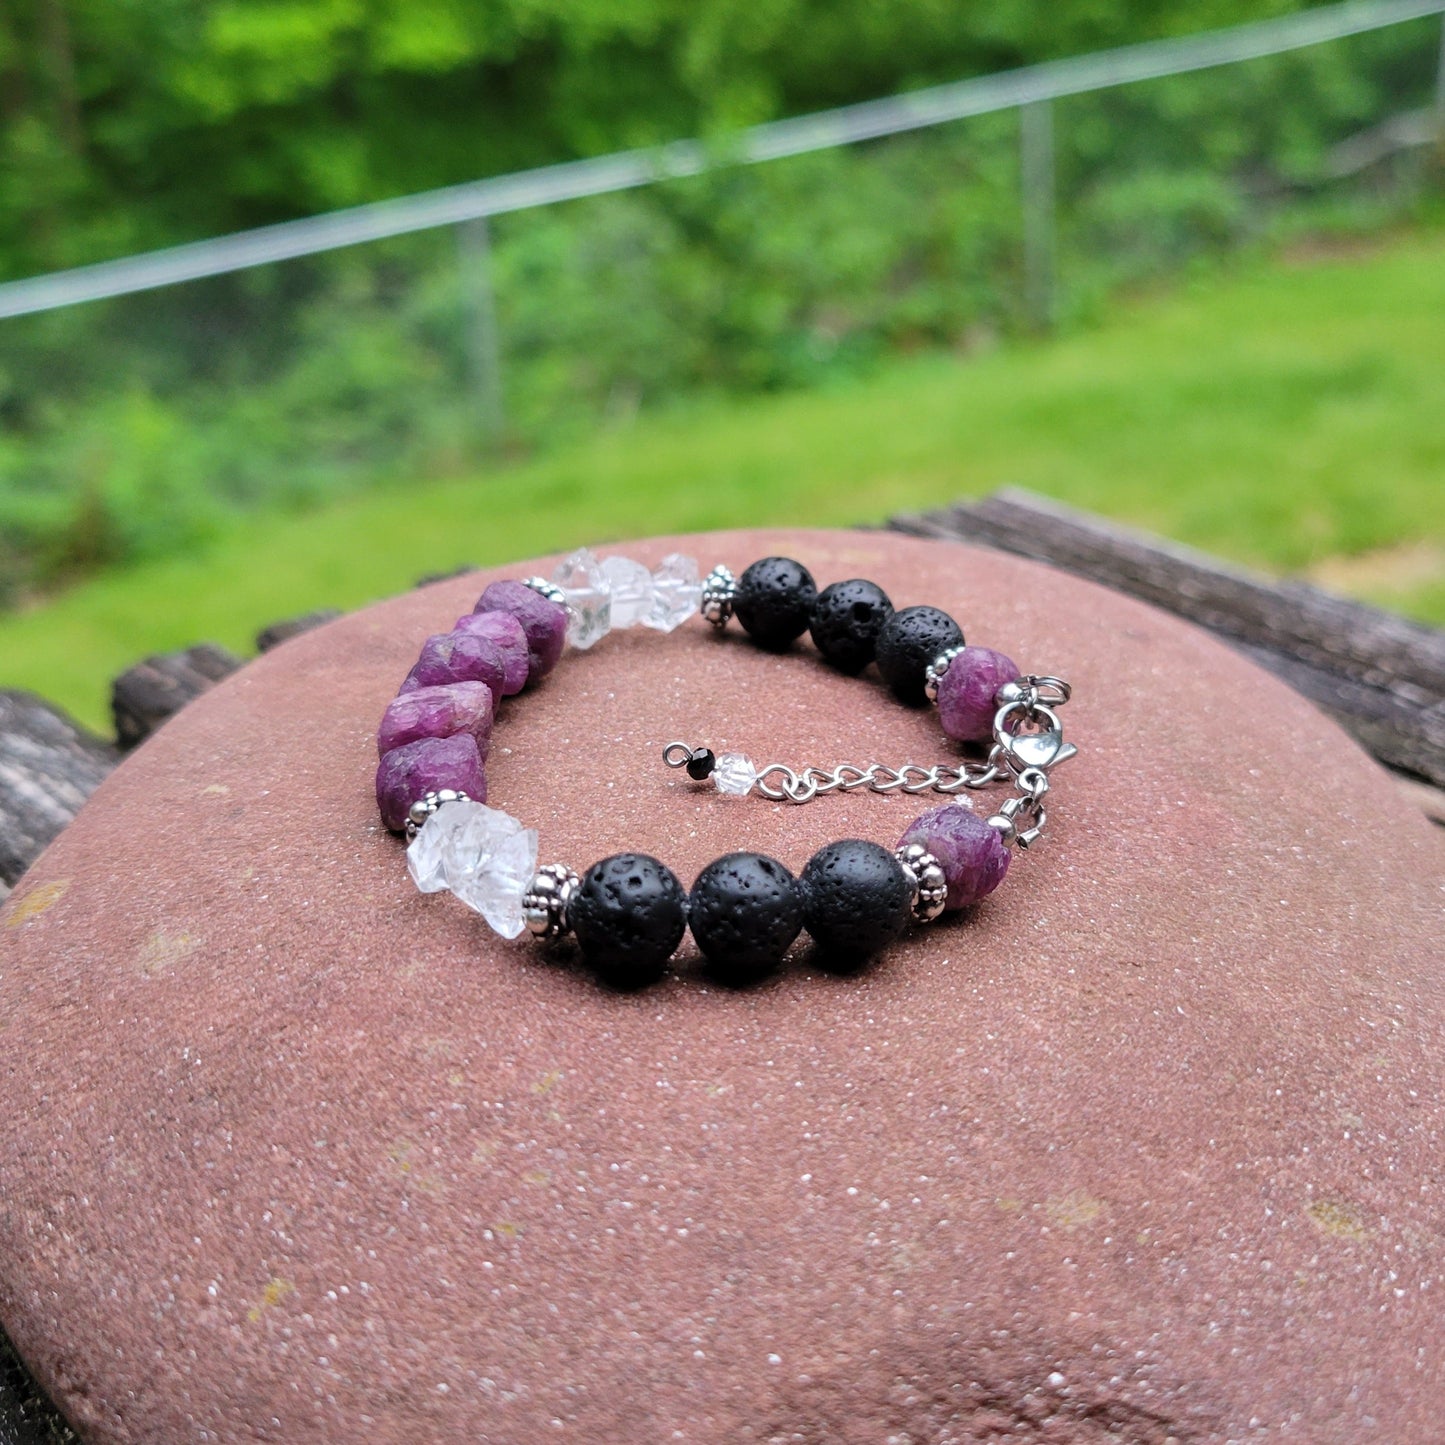 Lavender Aromatherapy Bracelet - handmade artisan jewelry with